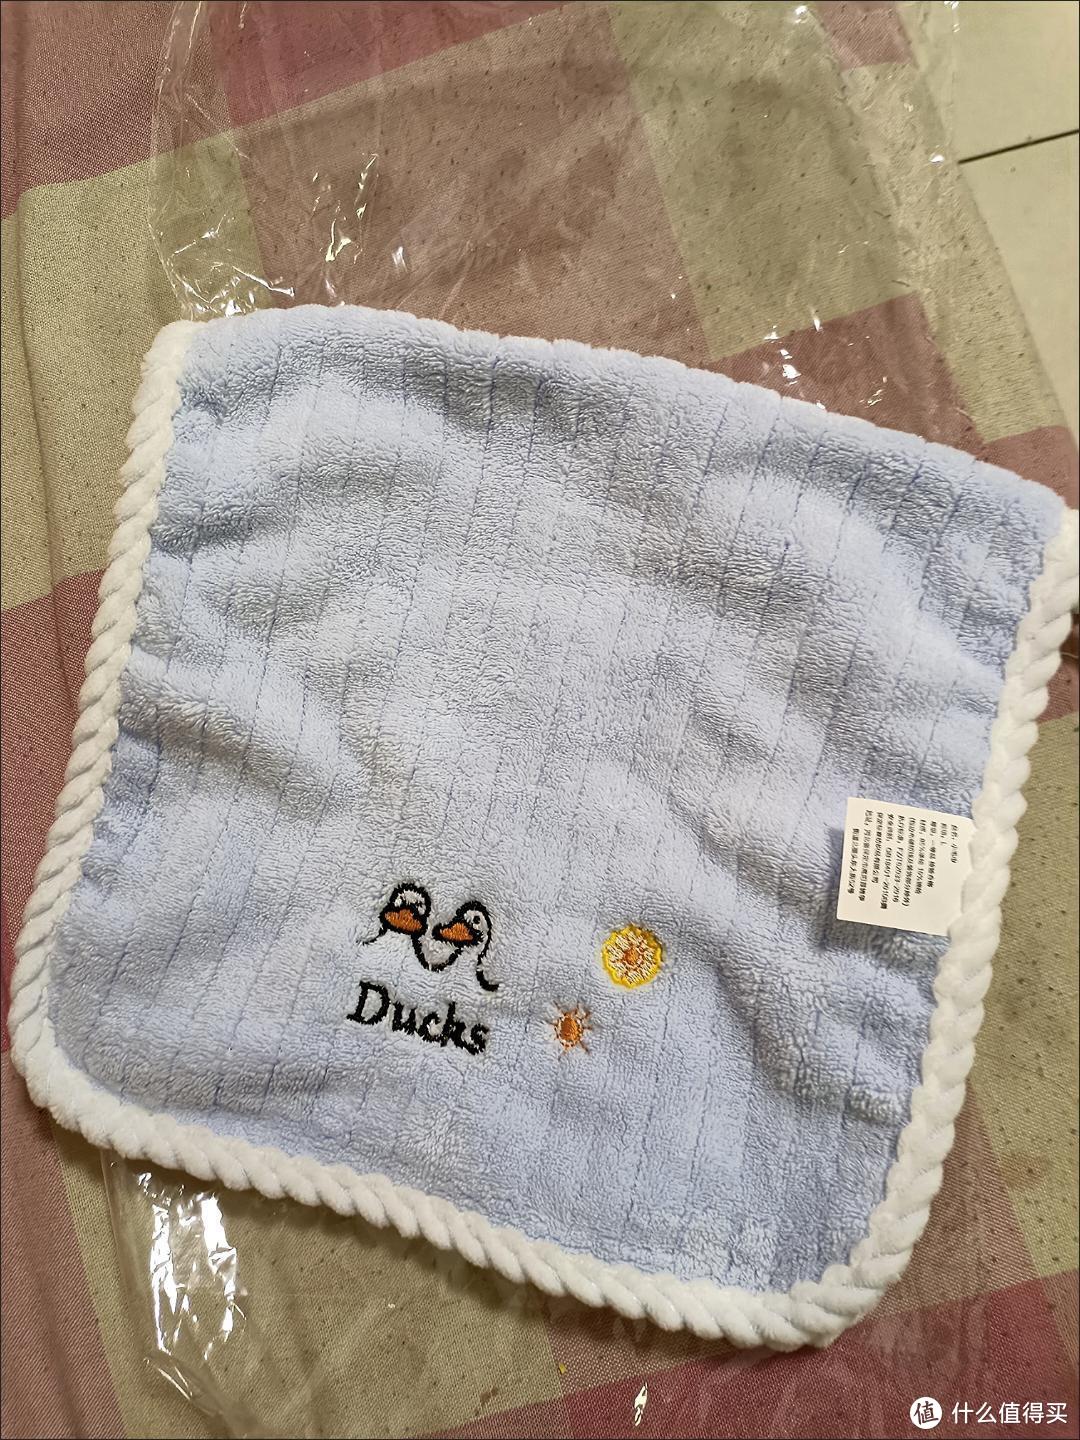 给小宝宝用的小毛巾很柔软。